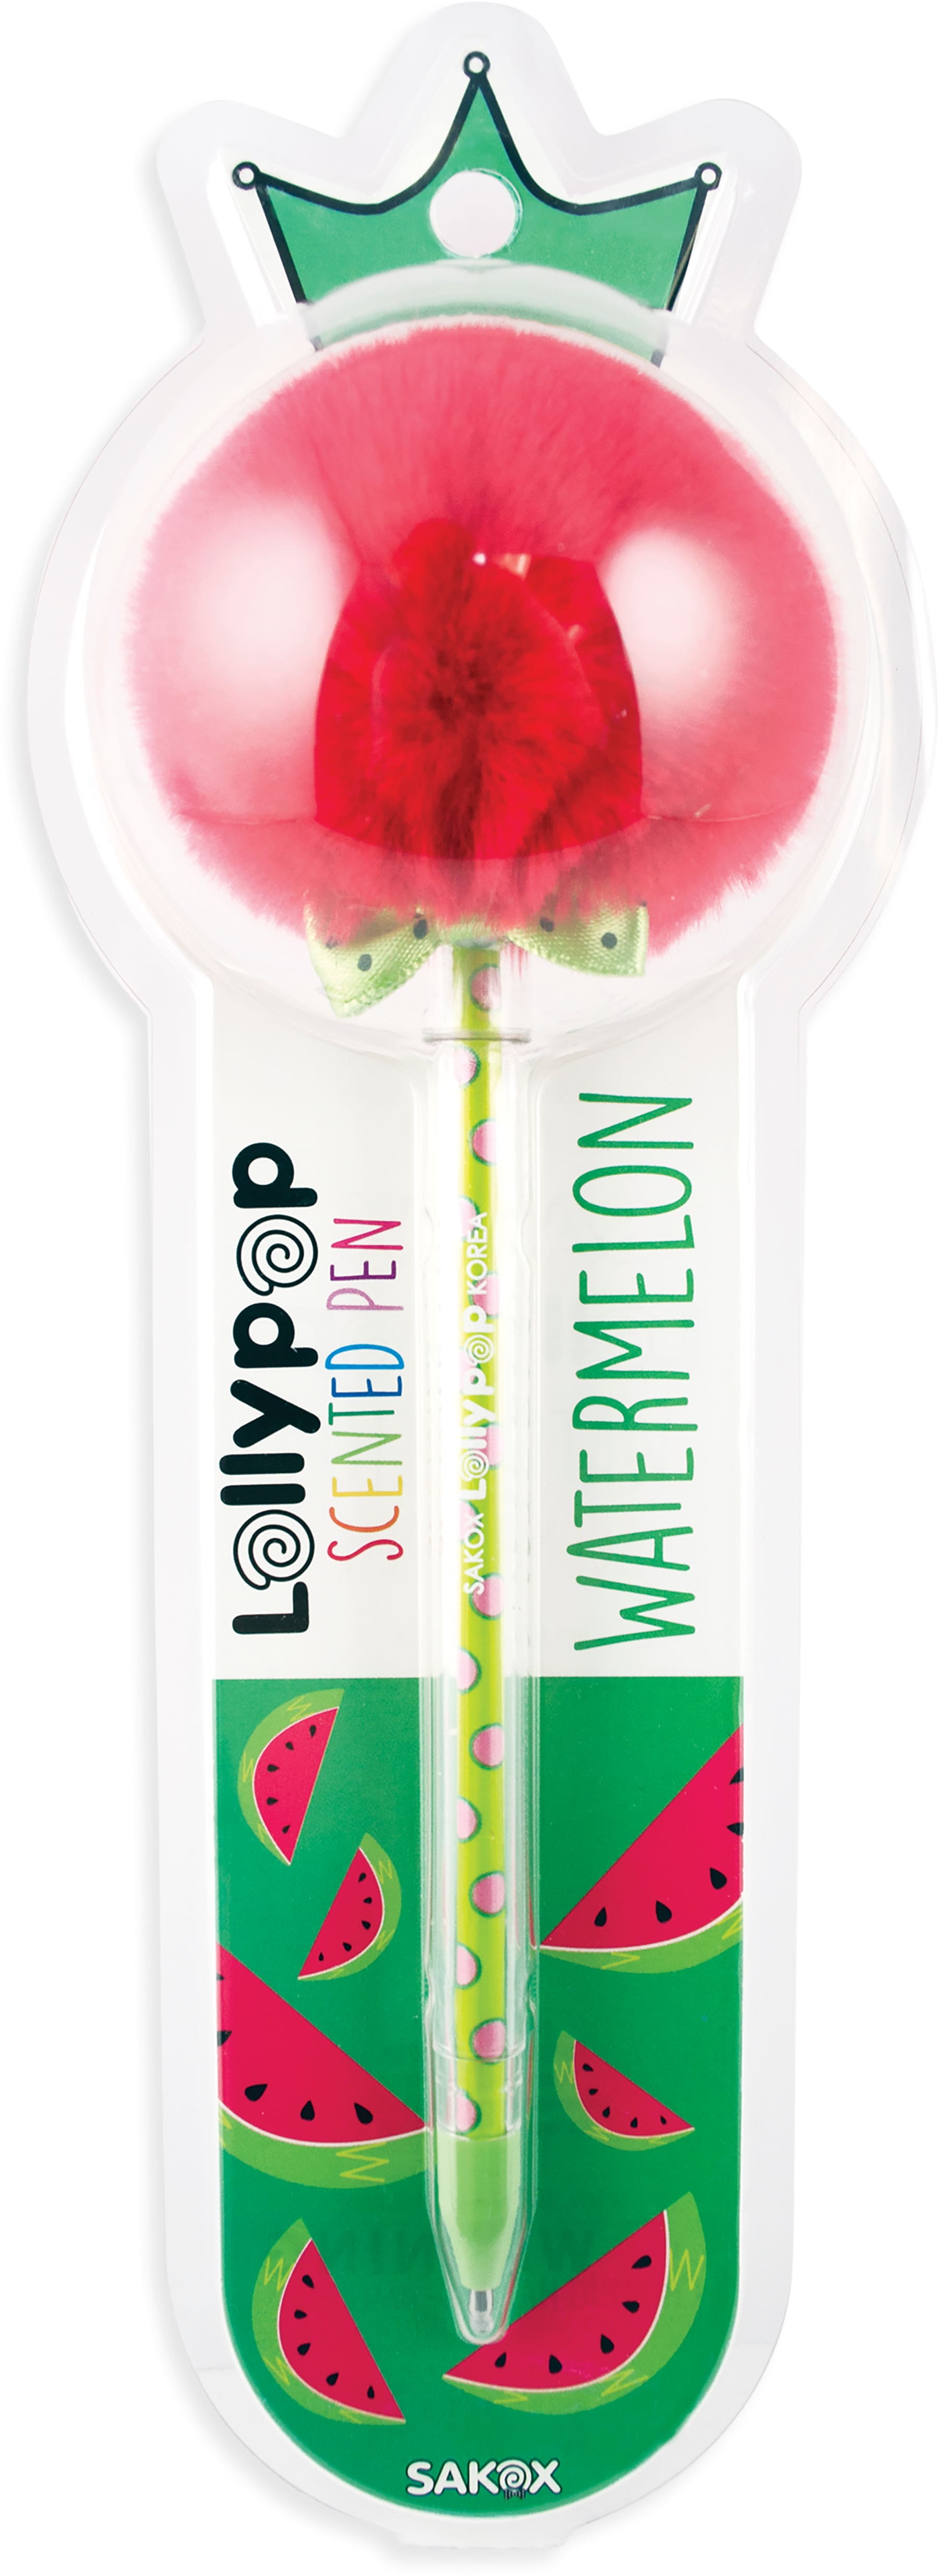 scented pen - watermelon